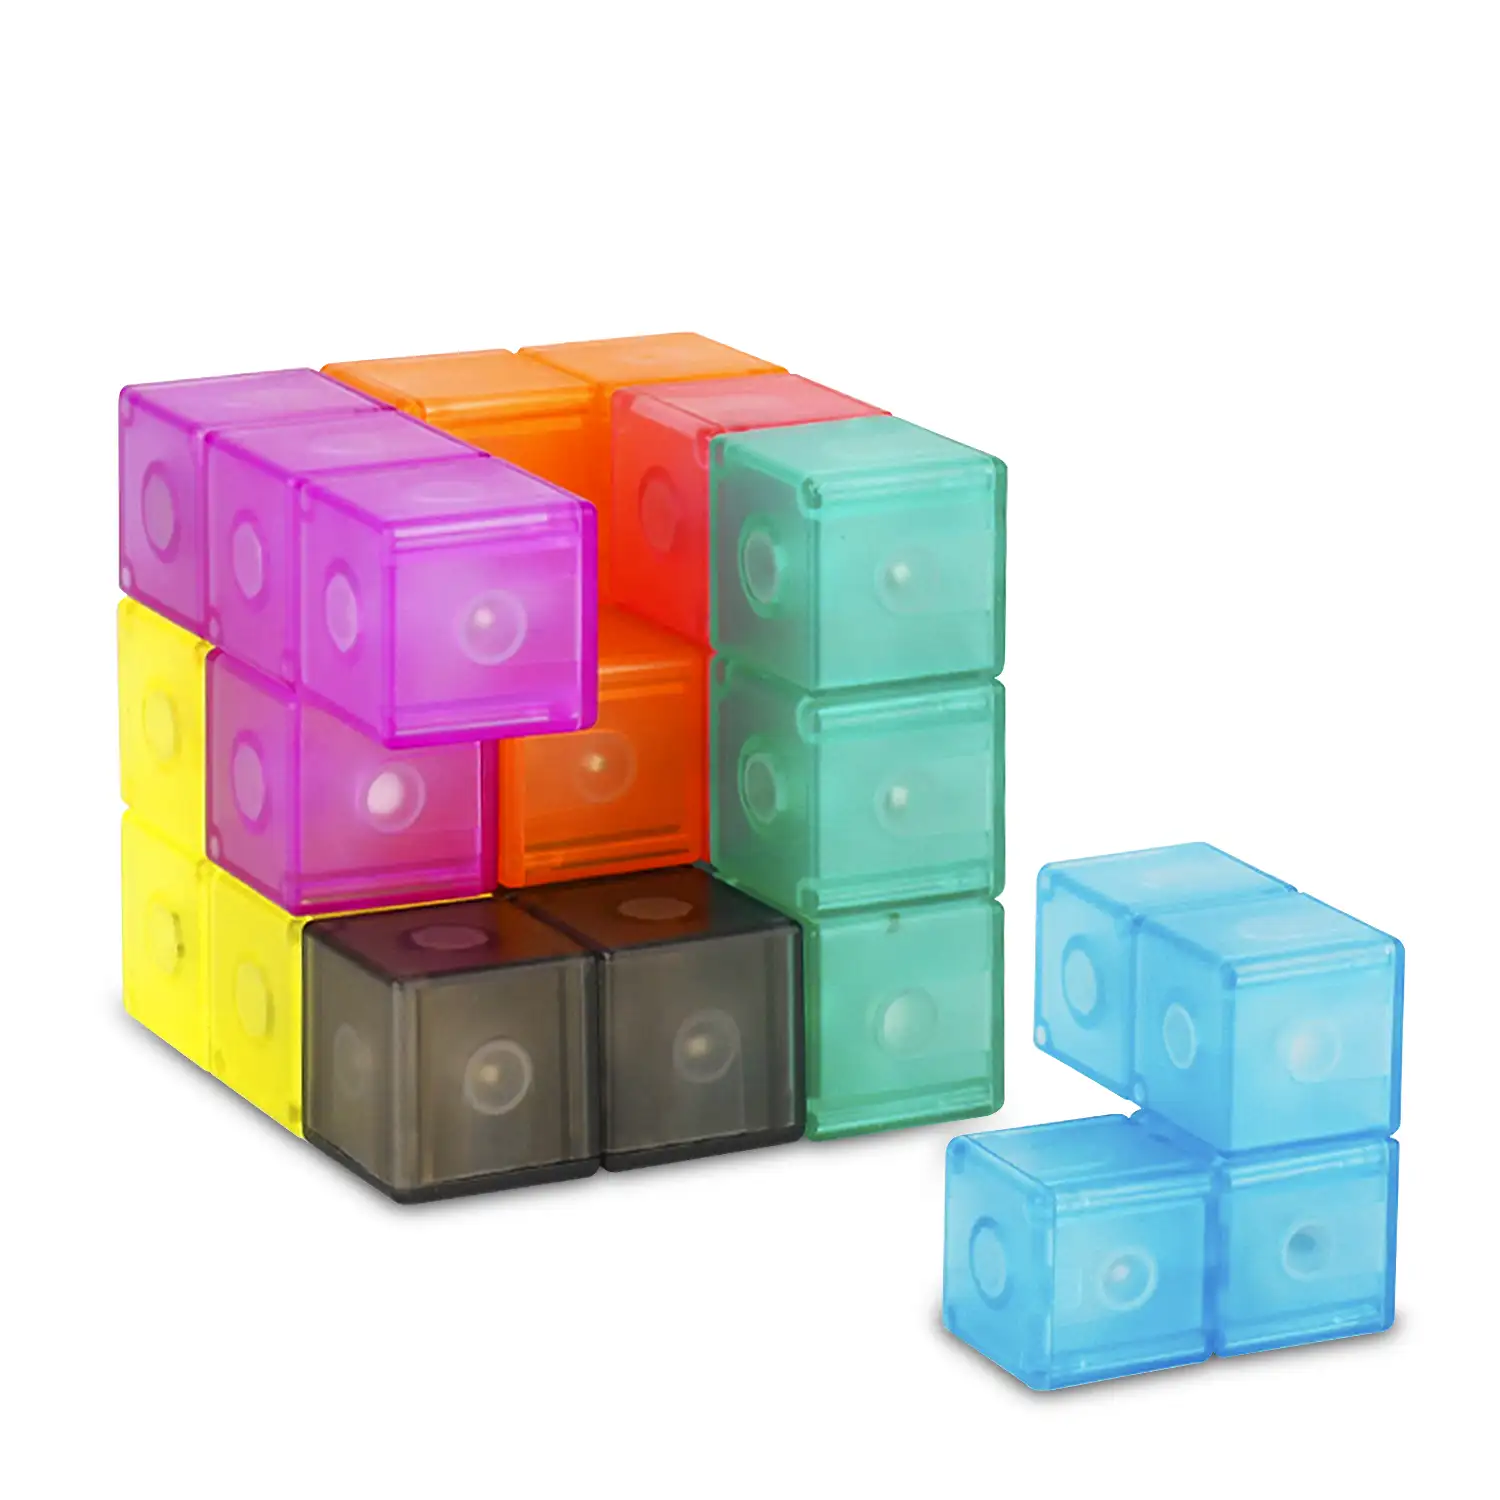 Cubo Magnético 3D Twist. Puzzle en 3 dimensiones, desafios con varios niveles de dificultad. 7 piezas 3D.